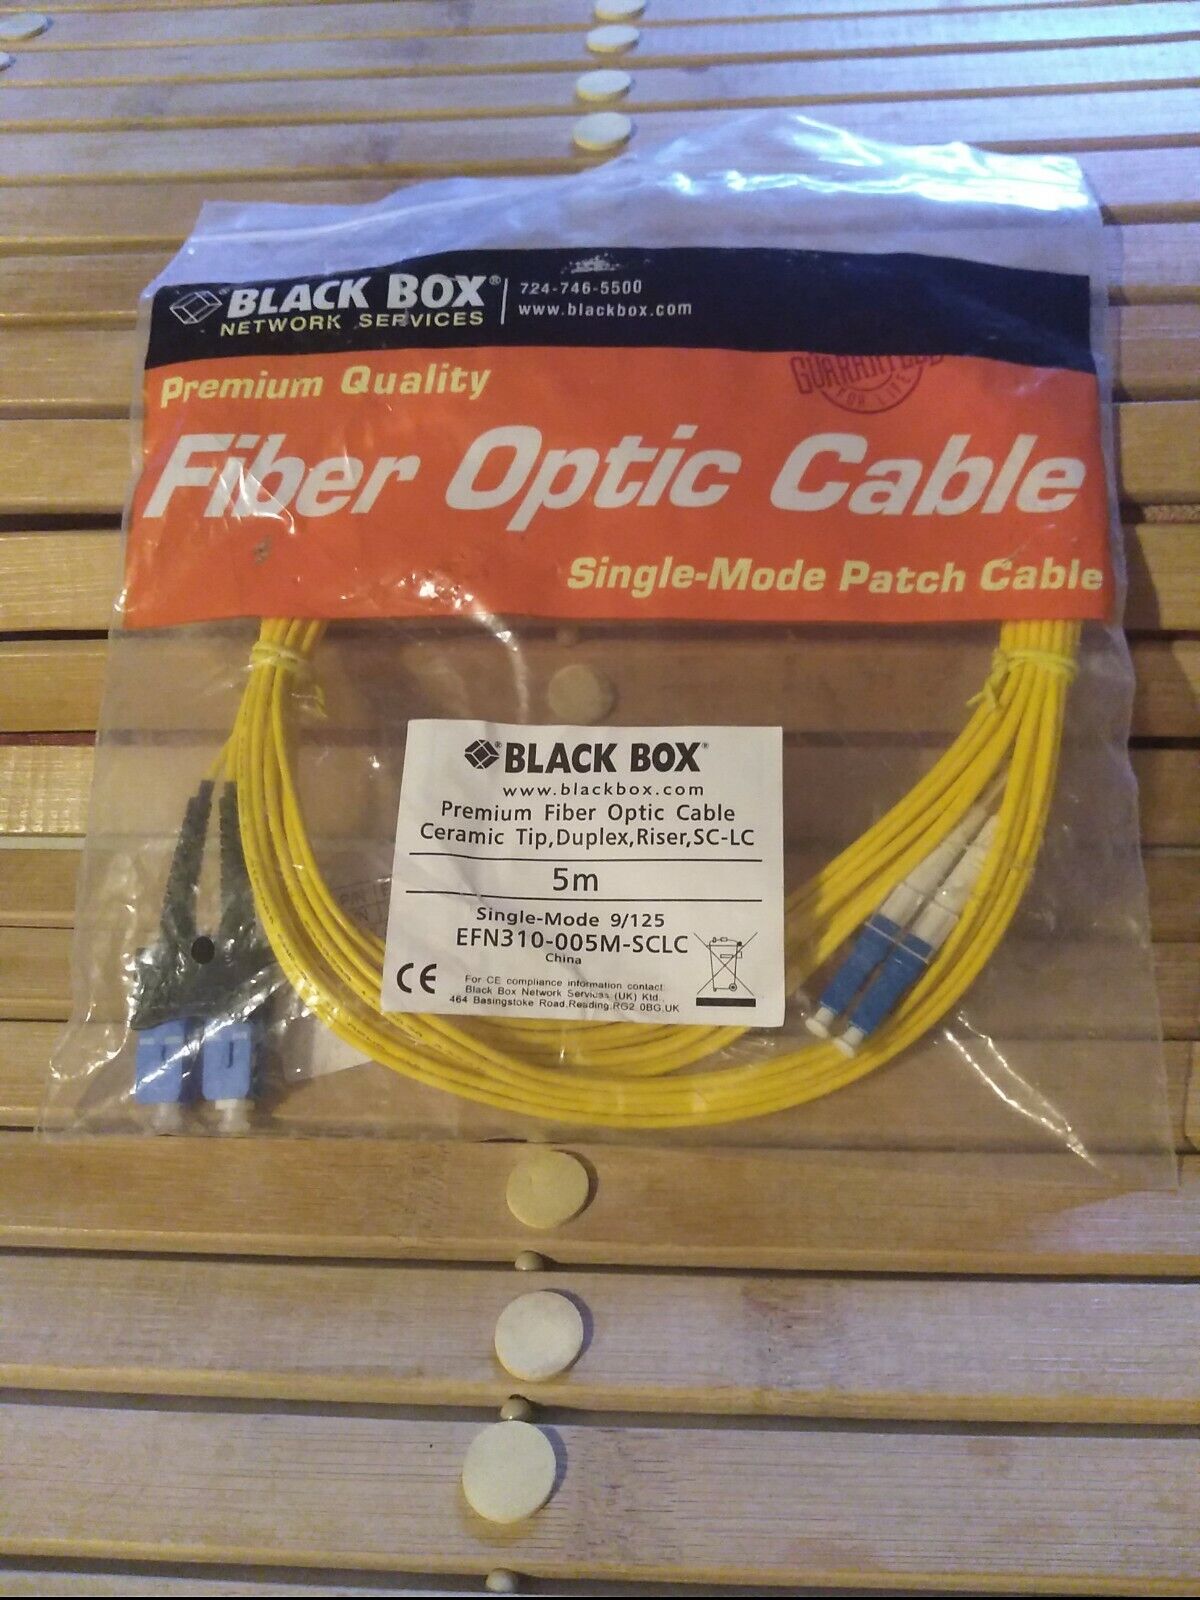 Black Box Premium Fiber Optic Duplex Patch Cable Single-Mode EFN310-005M-SCLC,5m